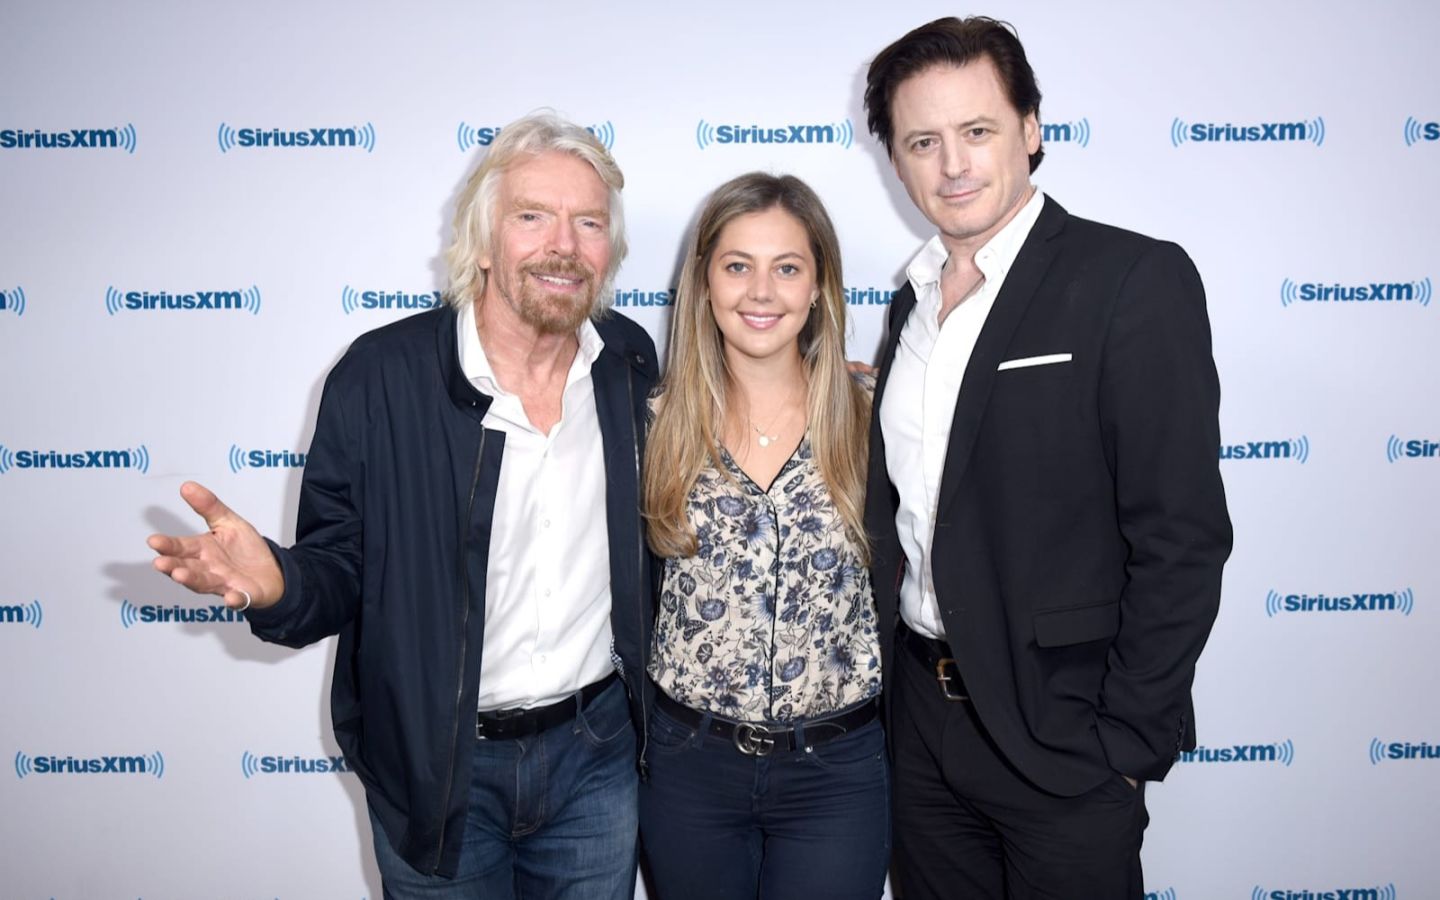 Richard Branson at SiriusXM with Milana Rabkin and John Fugelsang